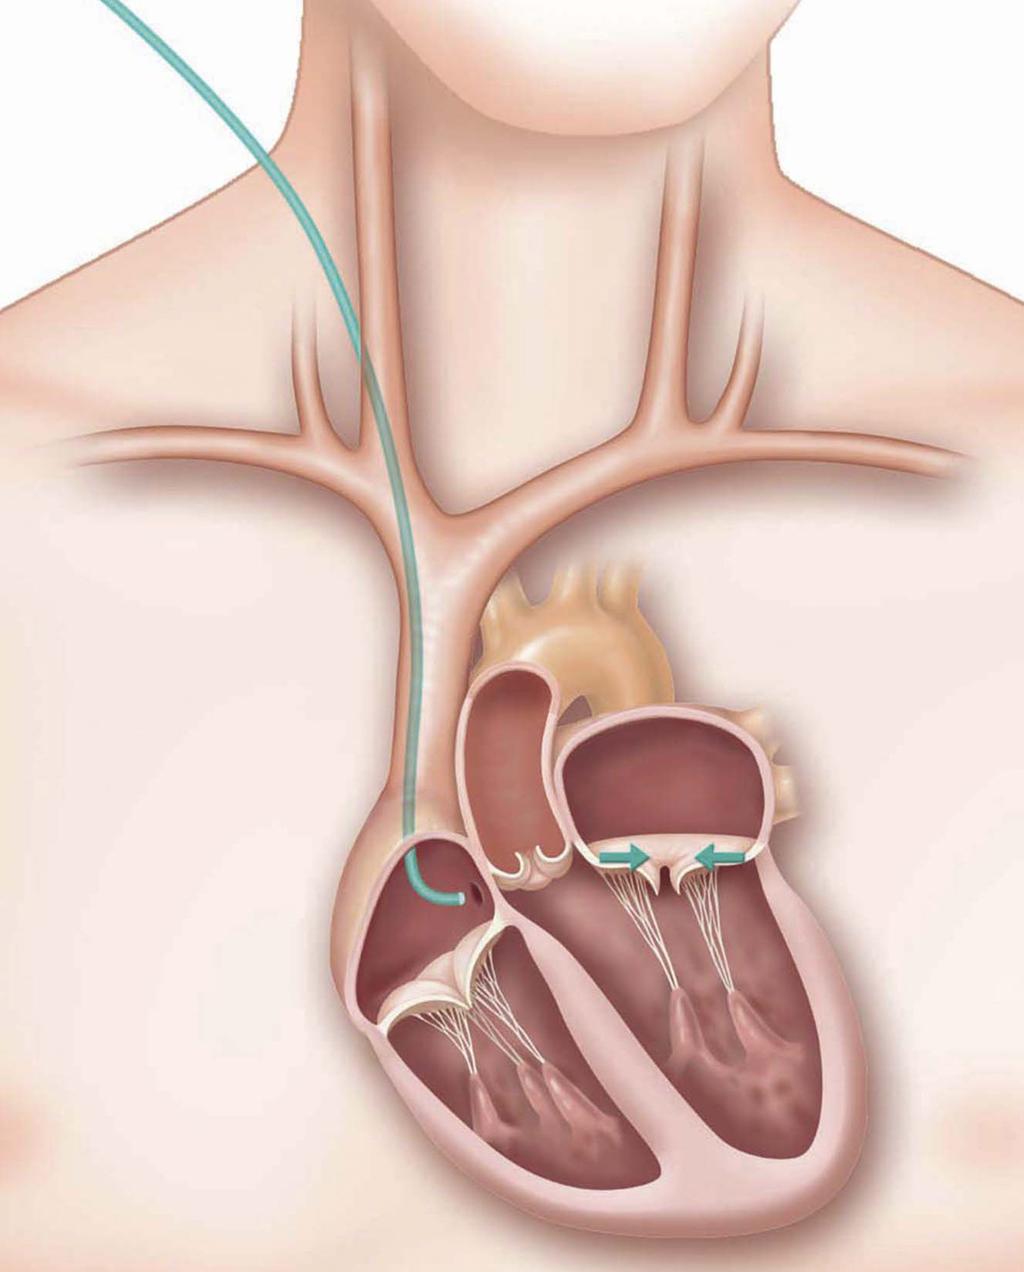 Stappen van de implantatie 1 Toegang De arts brengt een katheter in via een ader in de hals.